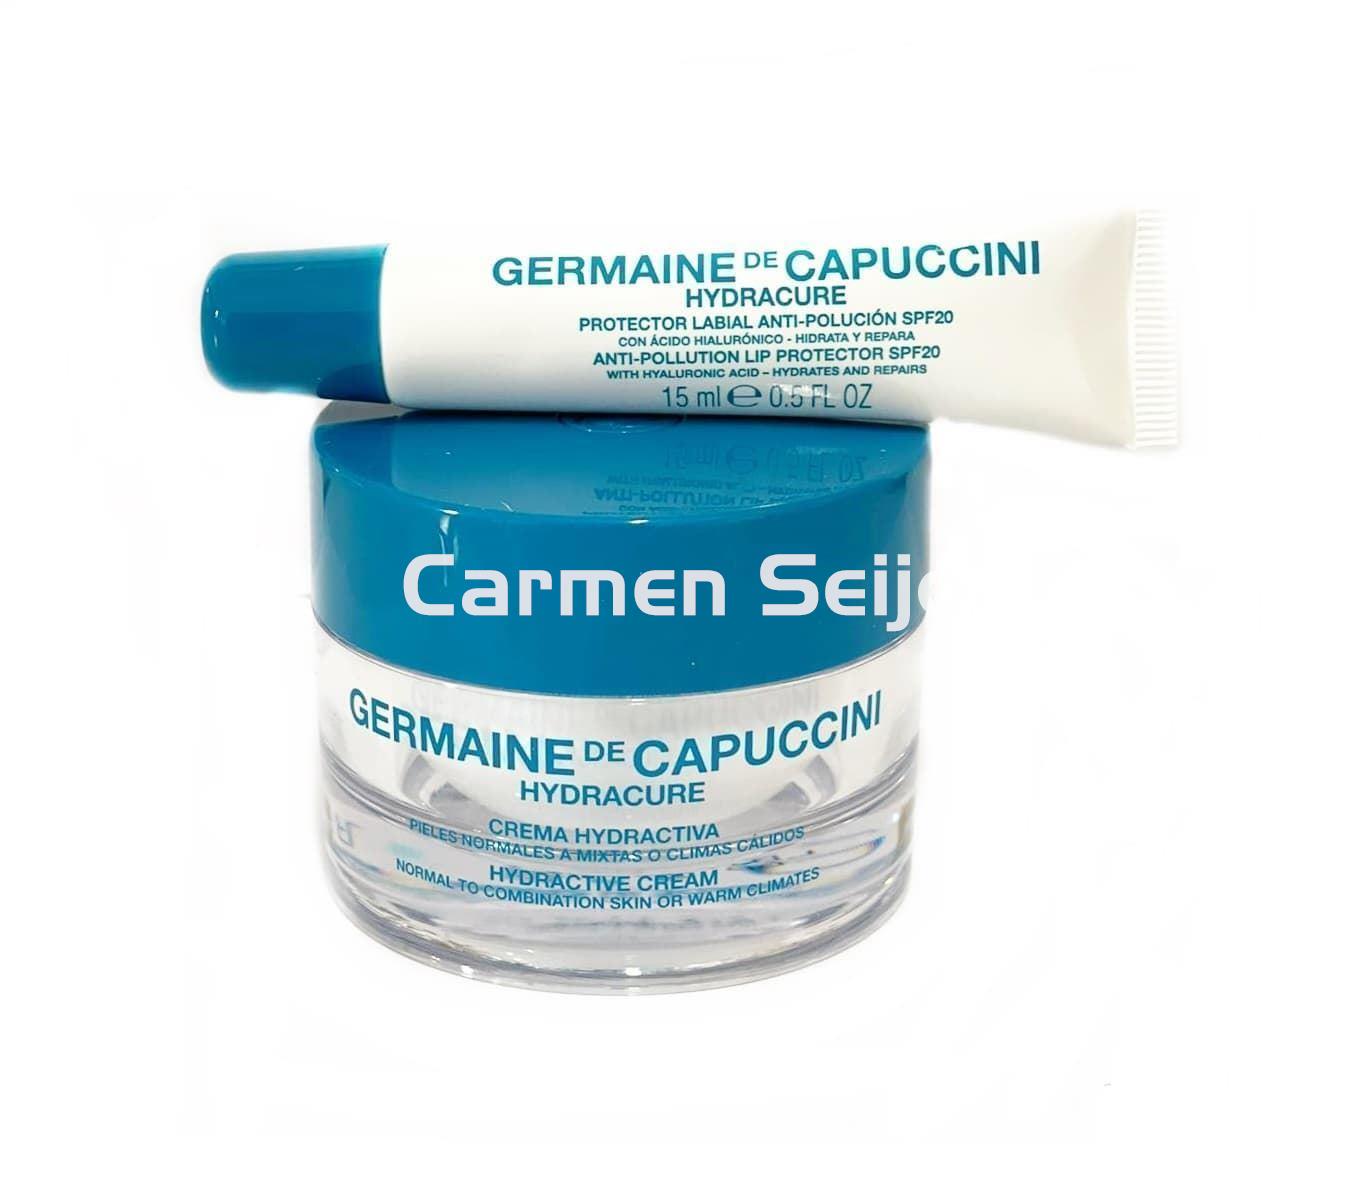 Germaine de Capuccini Pack Hydracure Normal/Mixta** - Imagen 1